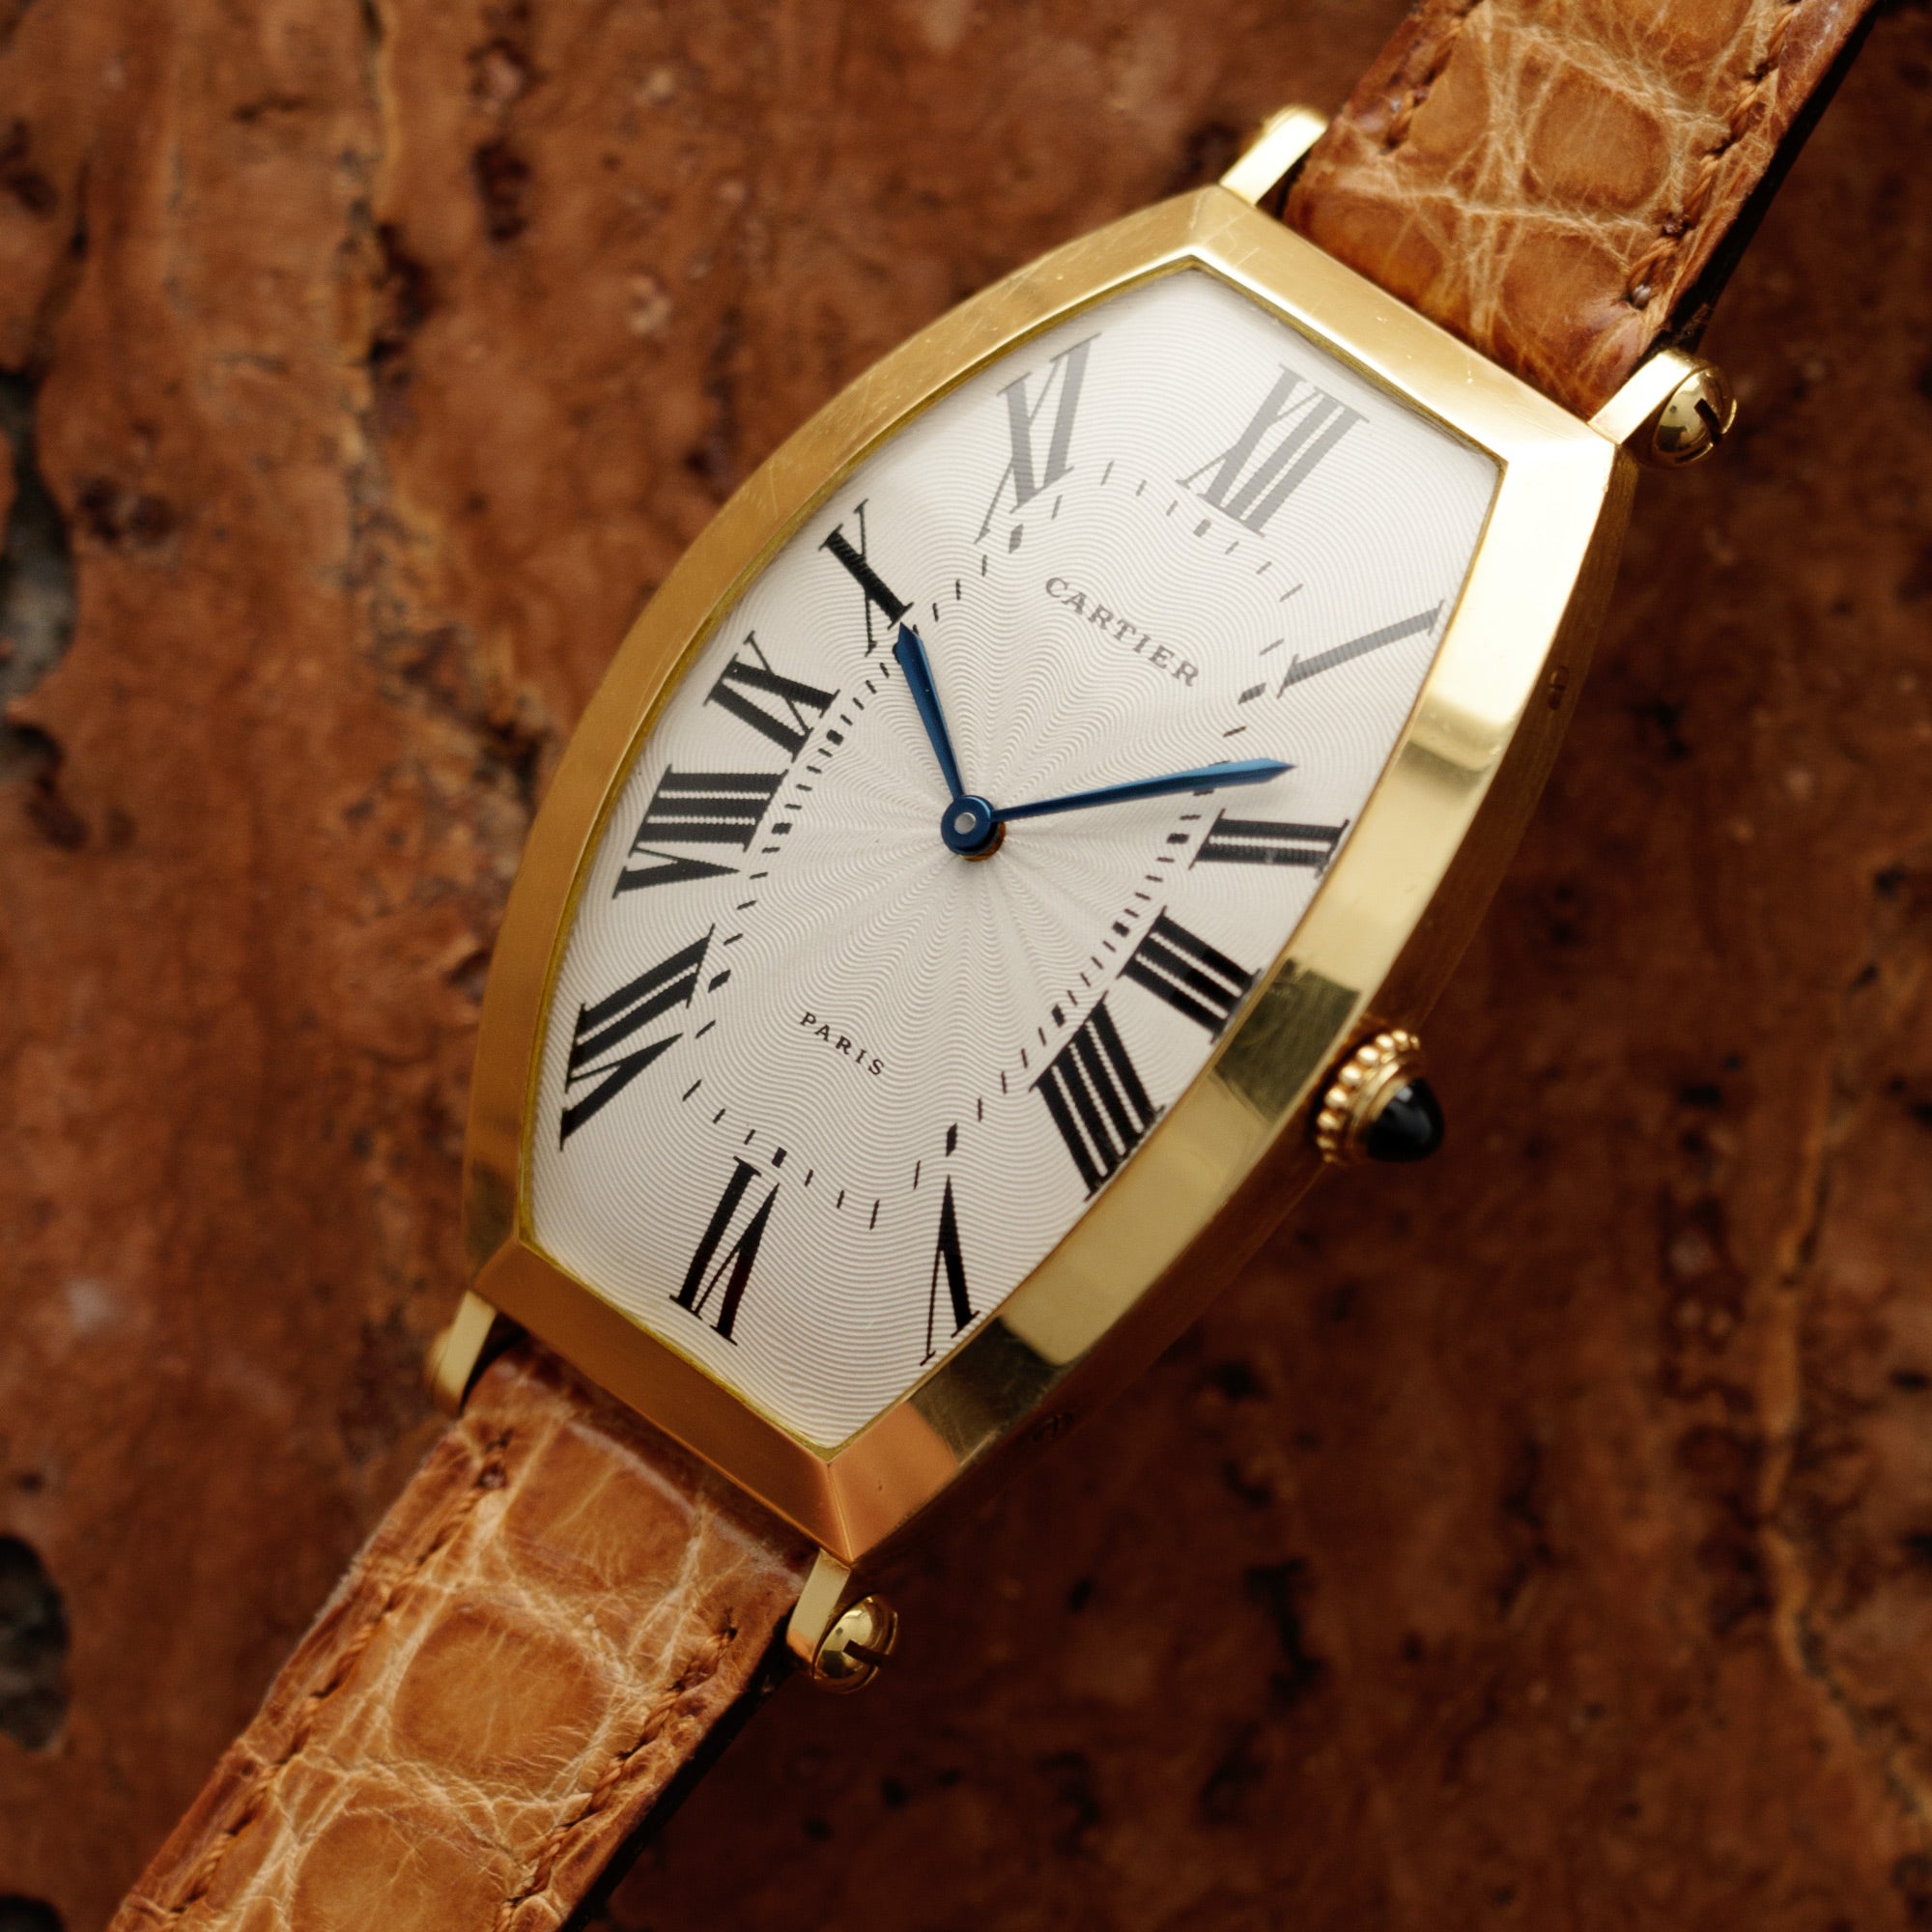 Cartier - Cartier Paris Yellow Gold Tonneau Mechanical Watch - The Keystone Watches